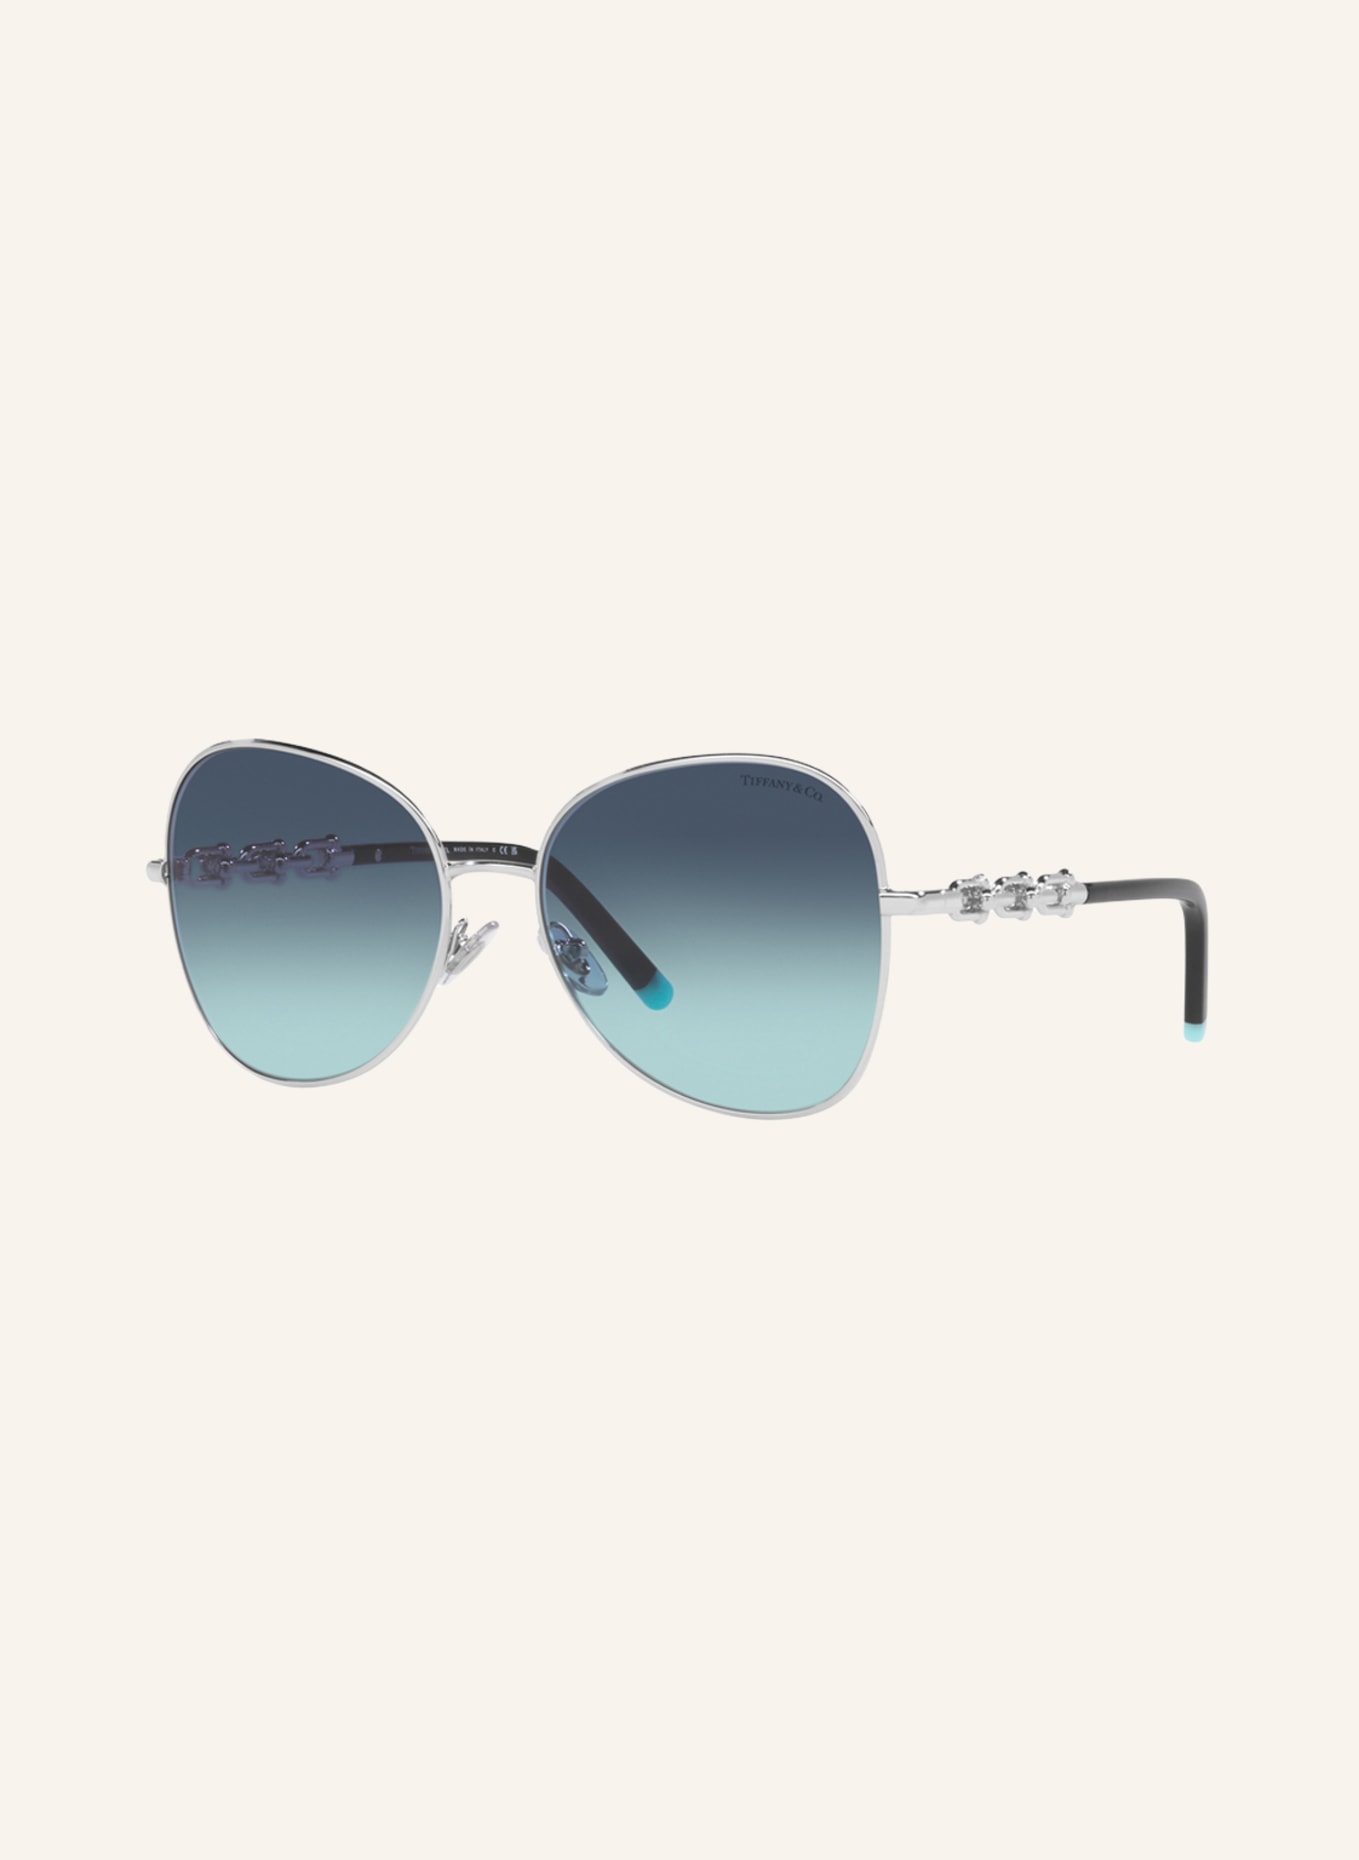 TIFFANY & Co. Sunglasses TF3086, Color: 60019S - SILVER/BLUE GRADIENT (Image 1)